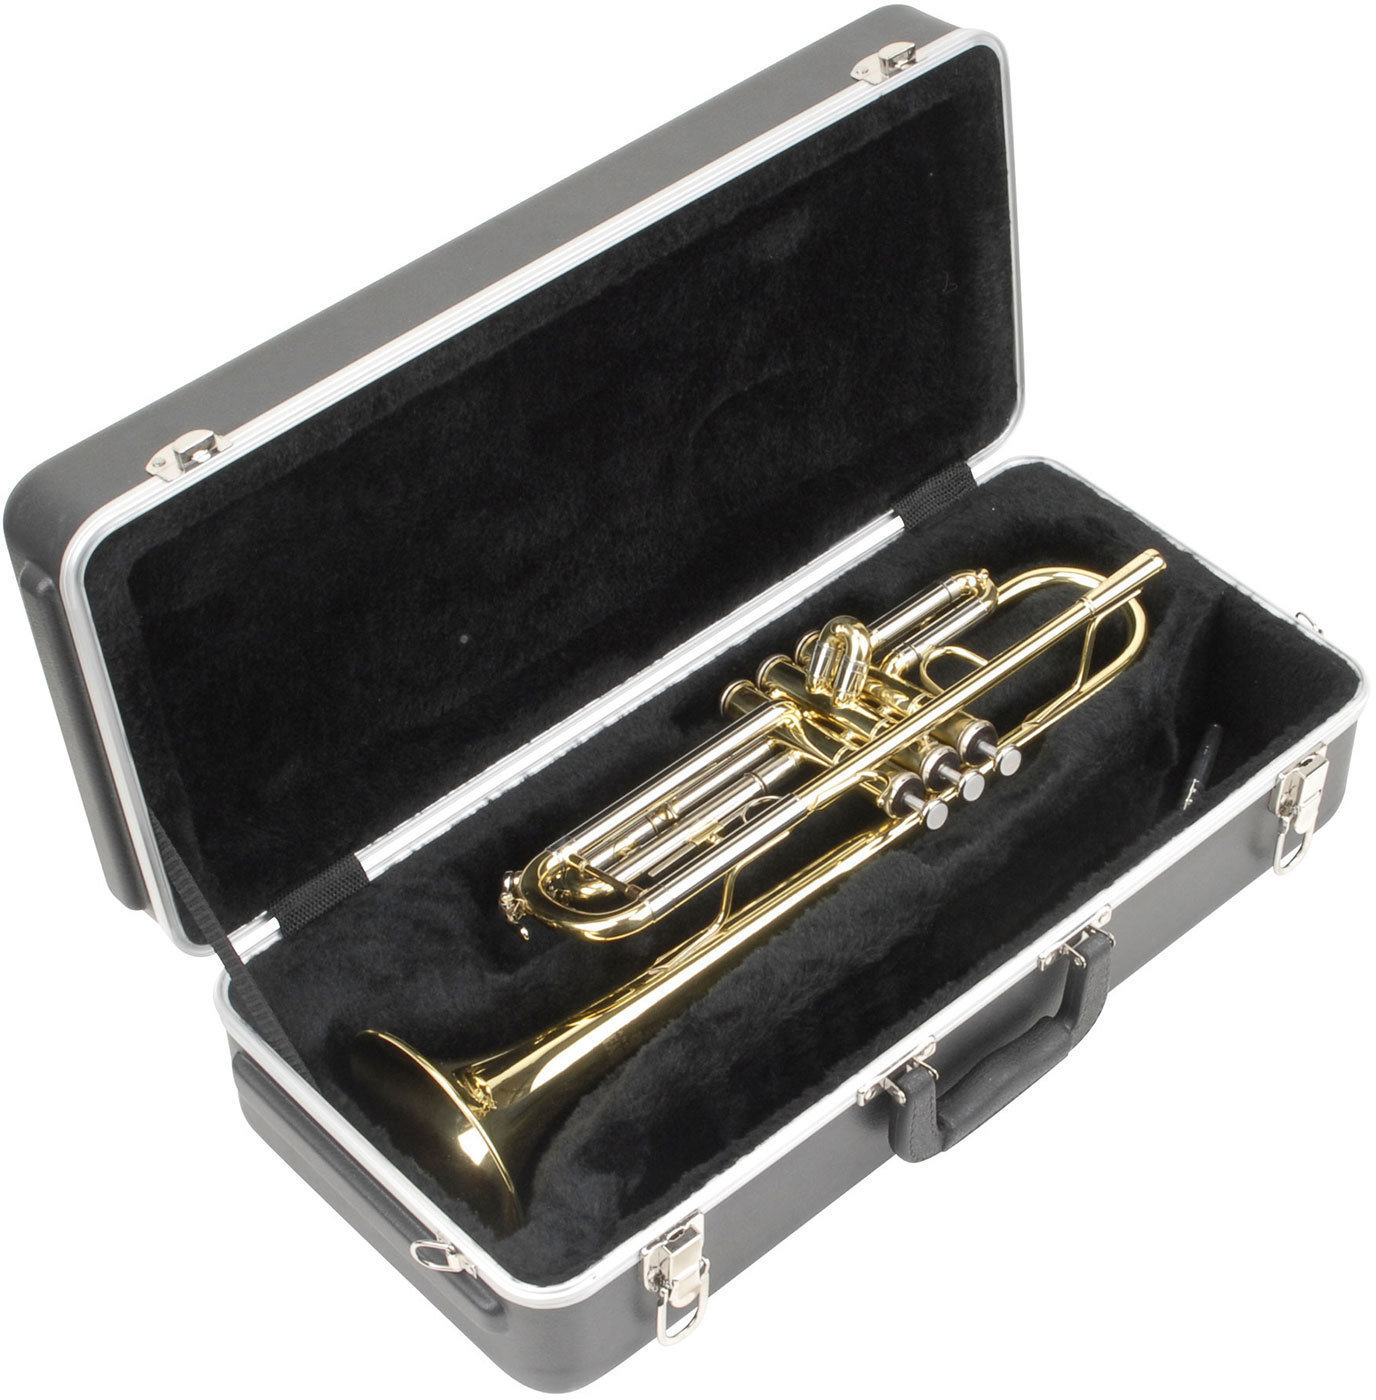 Skyddshölje för trumpet SKB Cases 1SKB-330 R Skyddshölje för trumpet